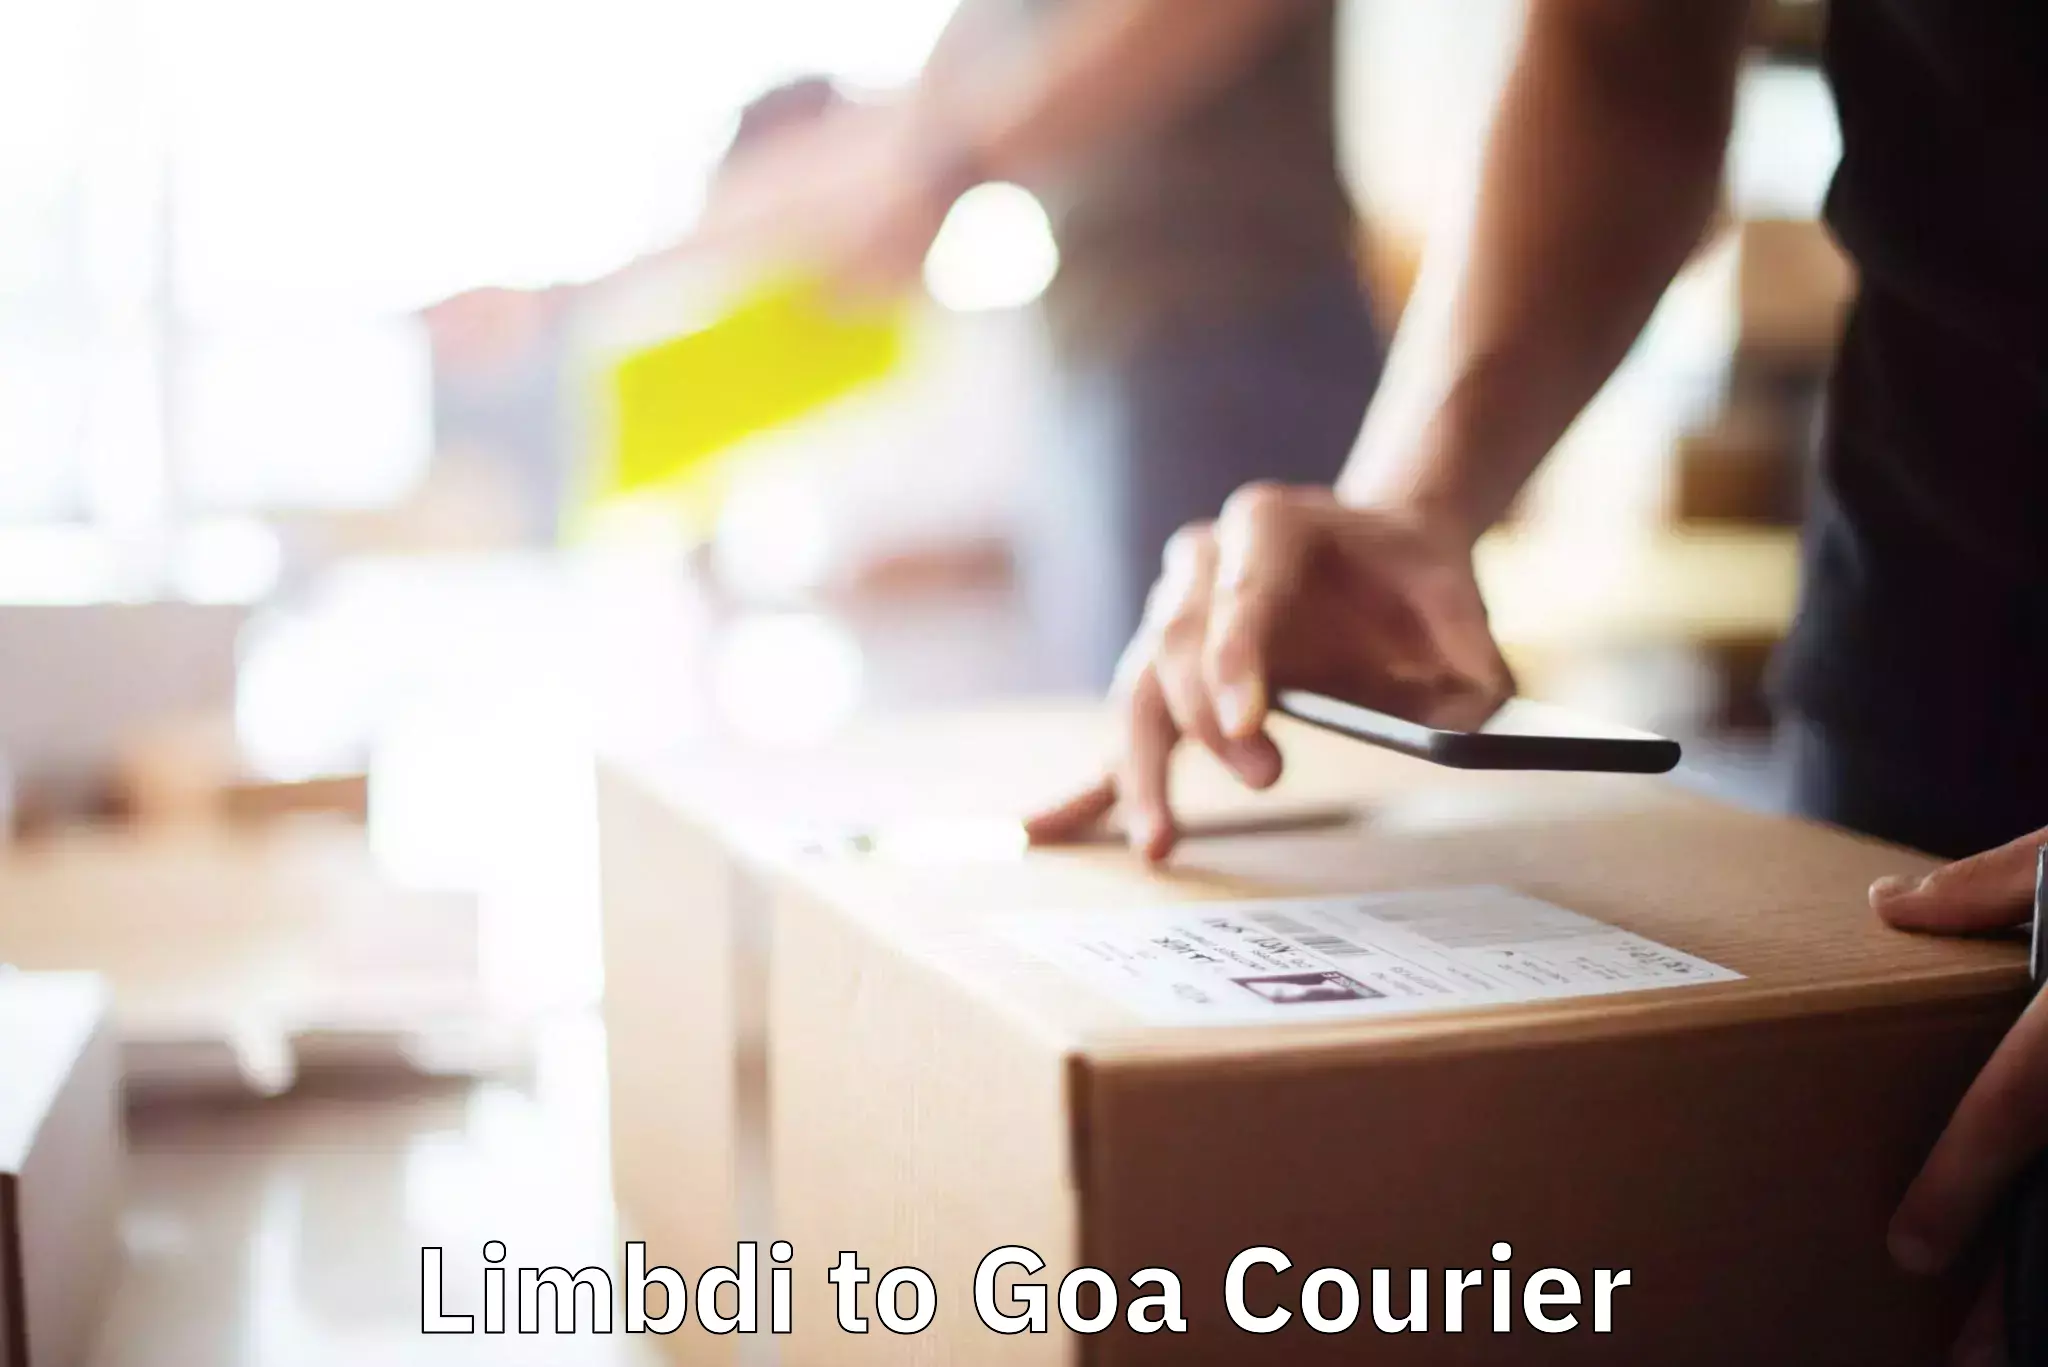 Furniture delivery service Limbdi to Goa University